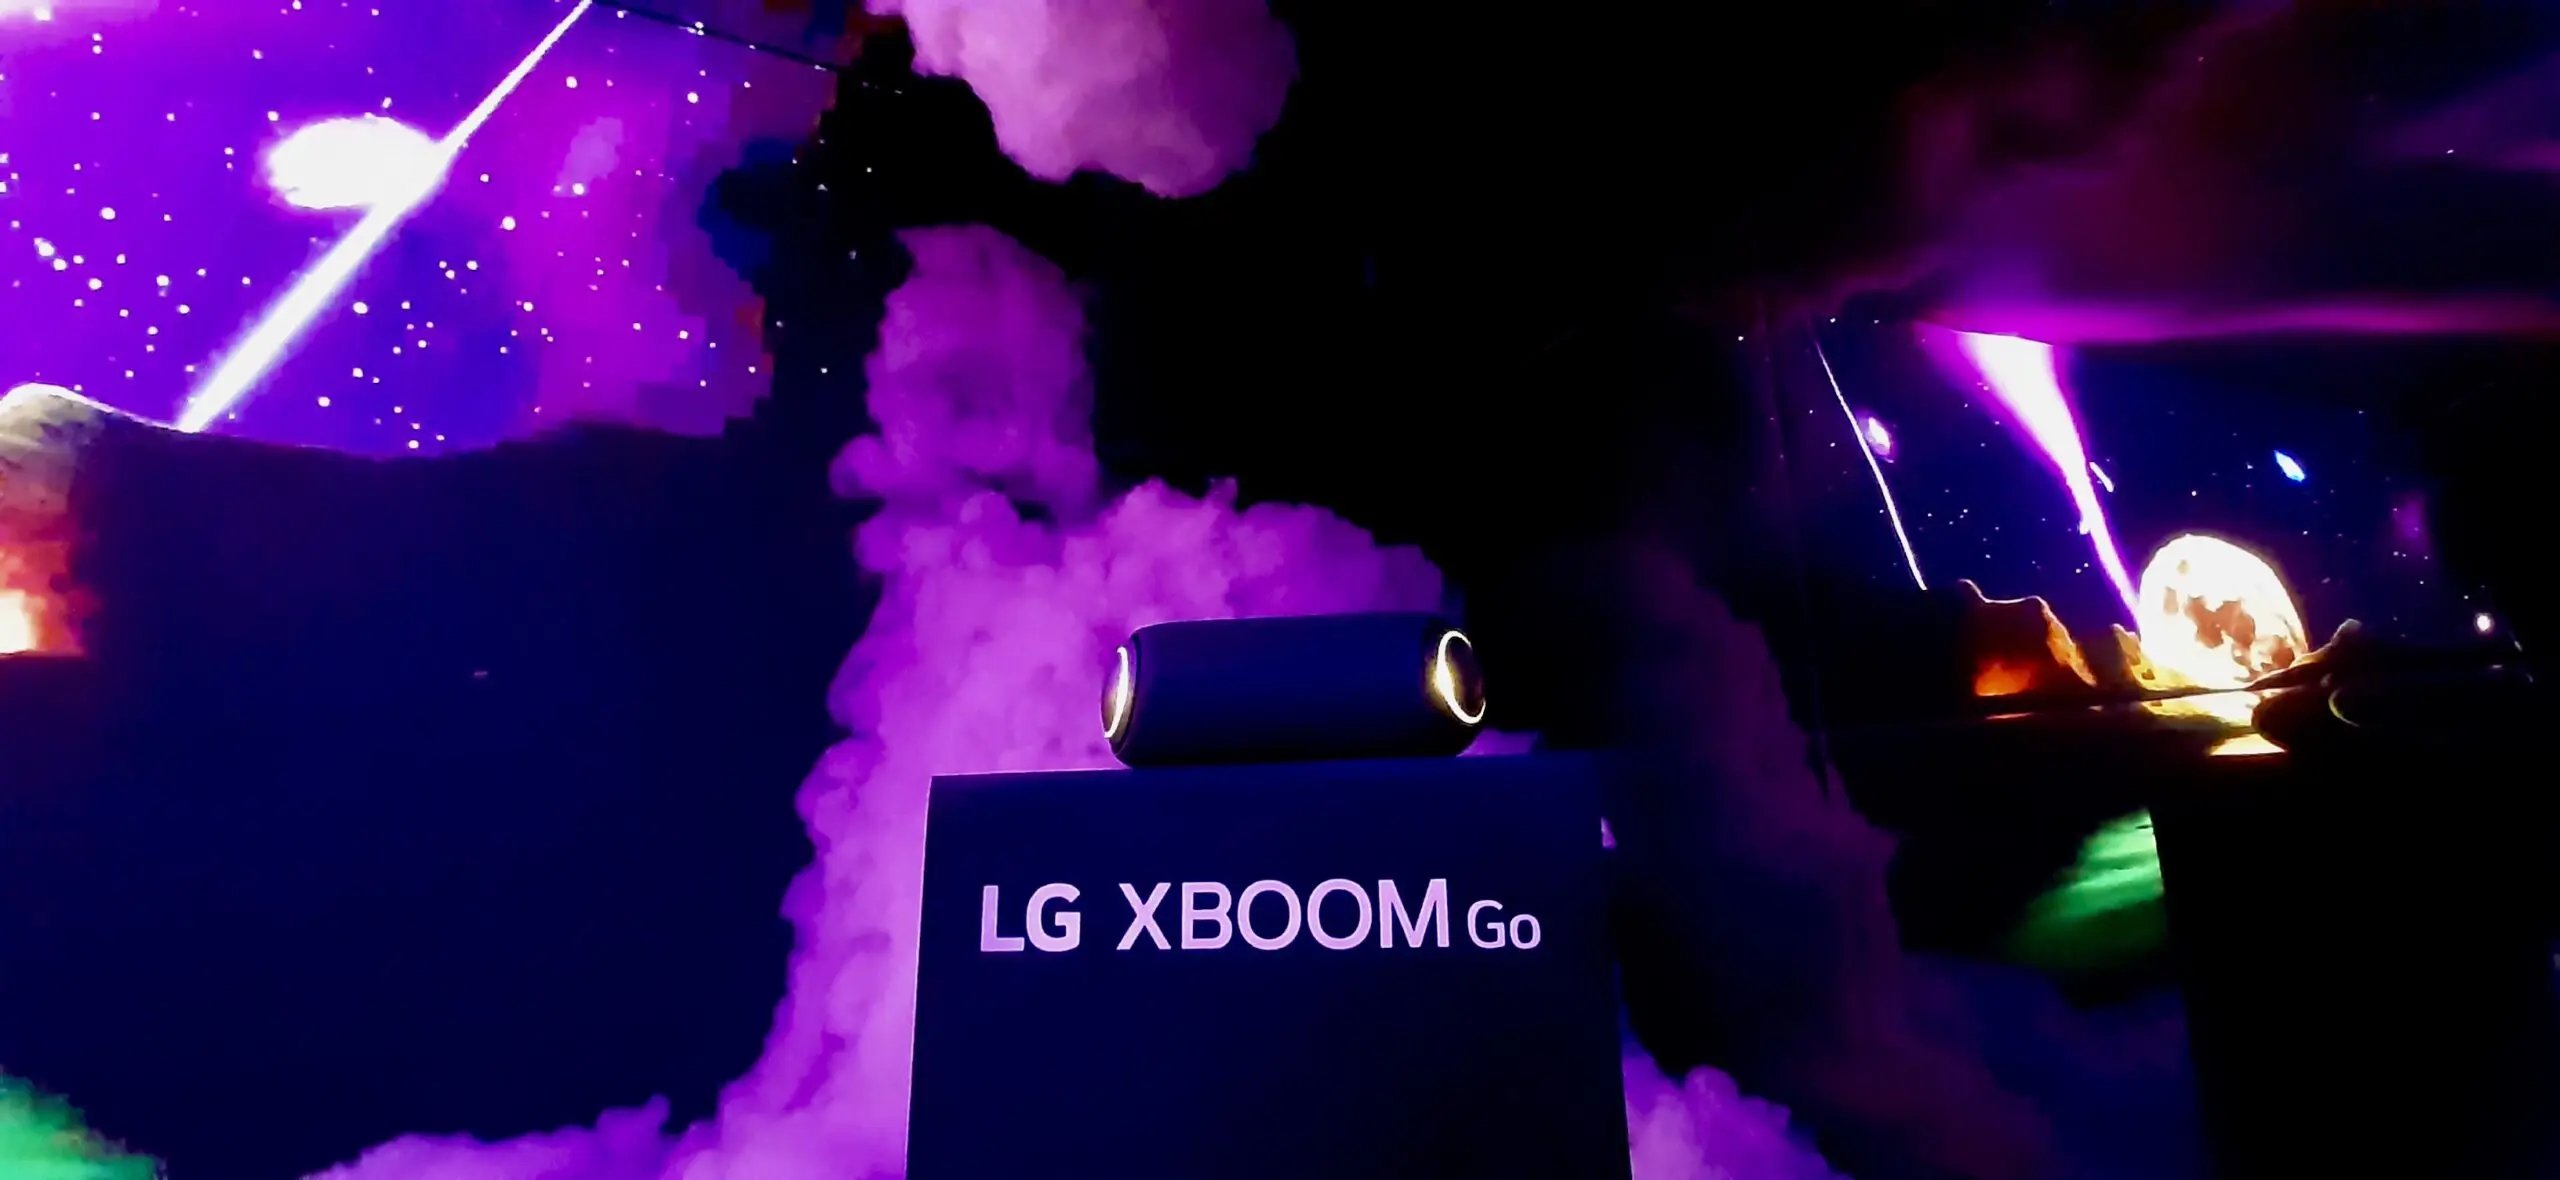 LG presentó en México una experiencia sensorial inmersiva con la XBOOM Go PL7